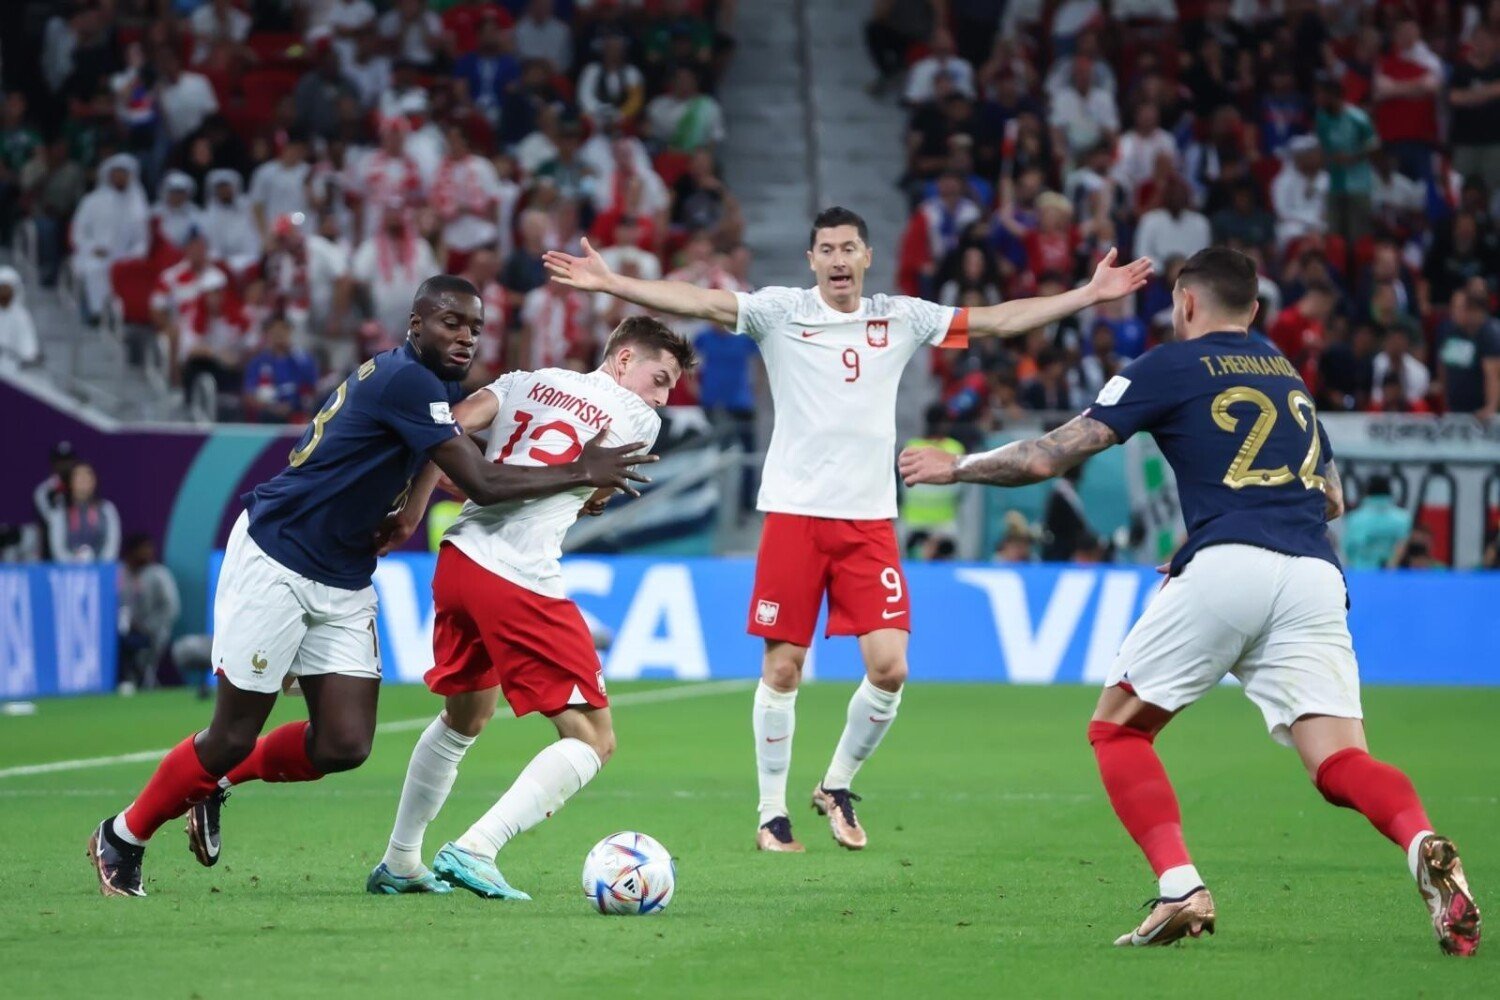 Pologne – France 12/04/2022. La Pologne sera éliminée des CM après le meilleur match.  La classe de Kylian Mbappé, le but d’adieu de Robert Lewandowski